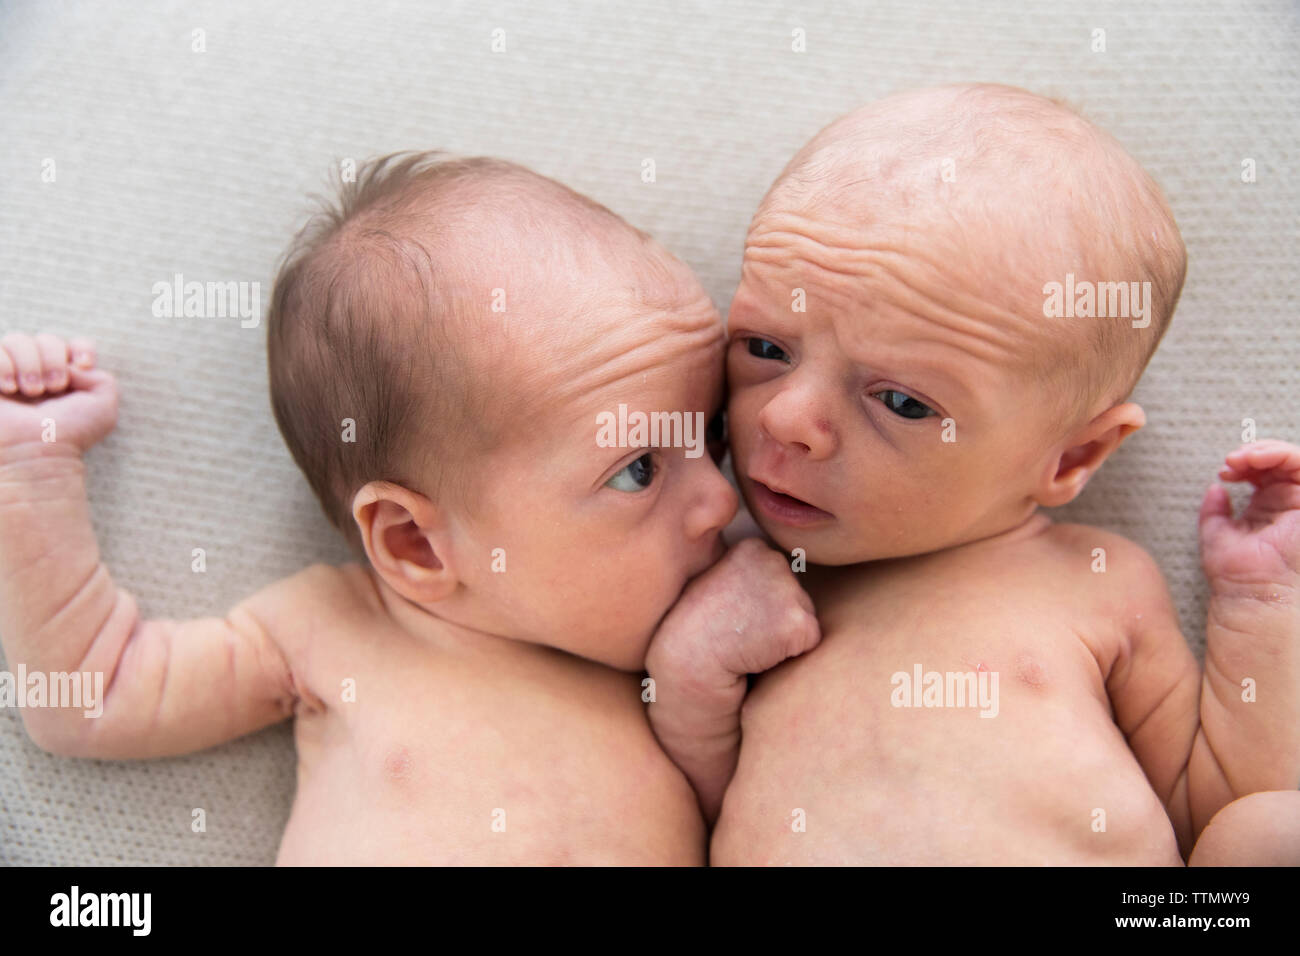 Dumme brüderlichen neugeborenen Zwillinge auf weiße Decke Stockfoto